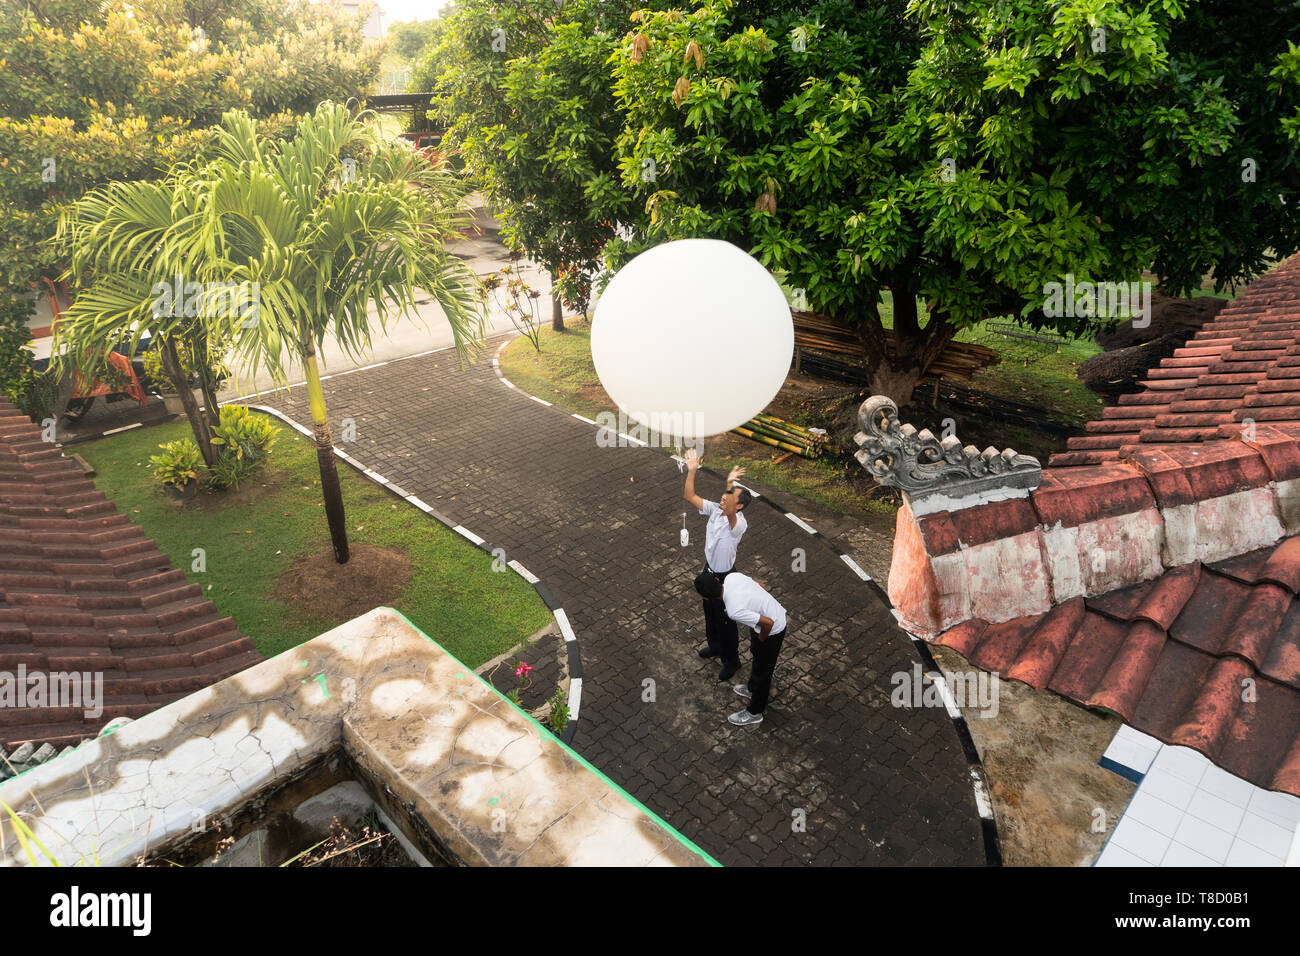 BADUNG/BALI-aprile 10 2019: un osservatore a Ngurah Rai stazione meteorologica rilasciando il grande bianco sonda radio palloncino per misurare la labilità del Foto Stock